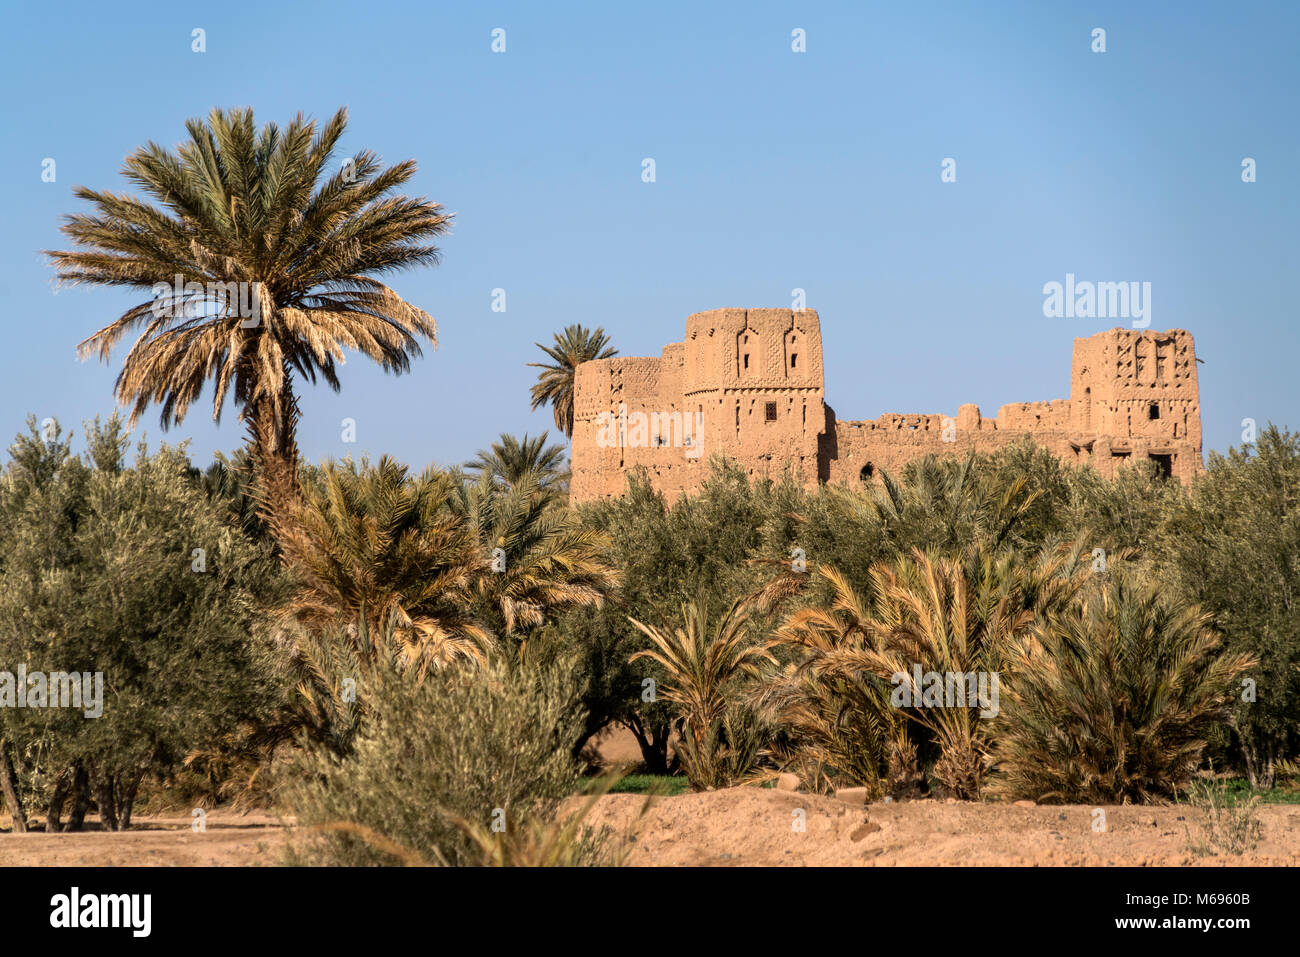 Kasbah à Skoura, Ouarzazate Oase der, Königreich Marokko, Afrika | Kasbah à Skoura, Ouarzazate oasis, Royaume du Maroc, l'Afrique Banque D'Images